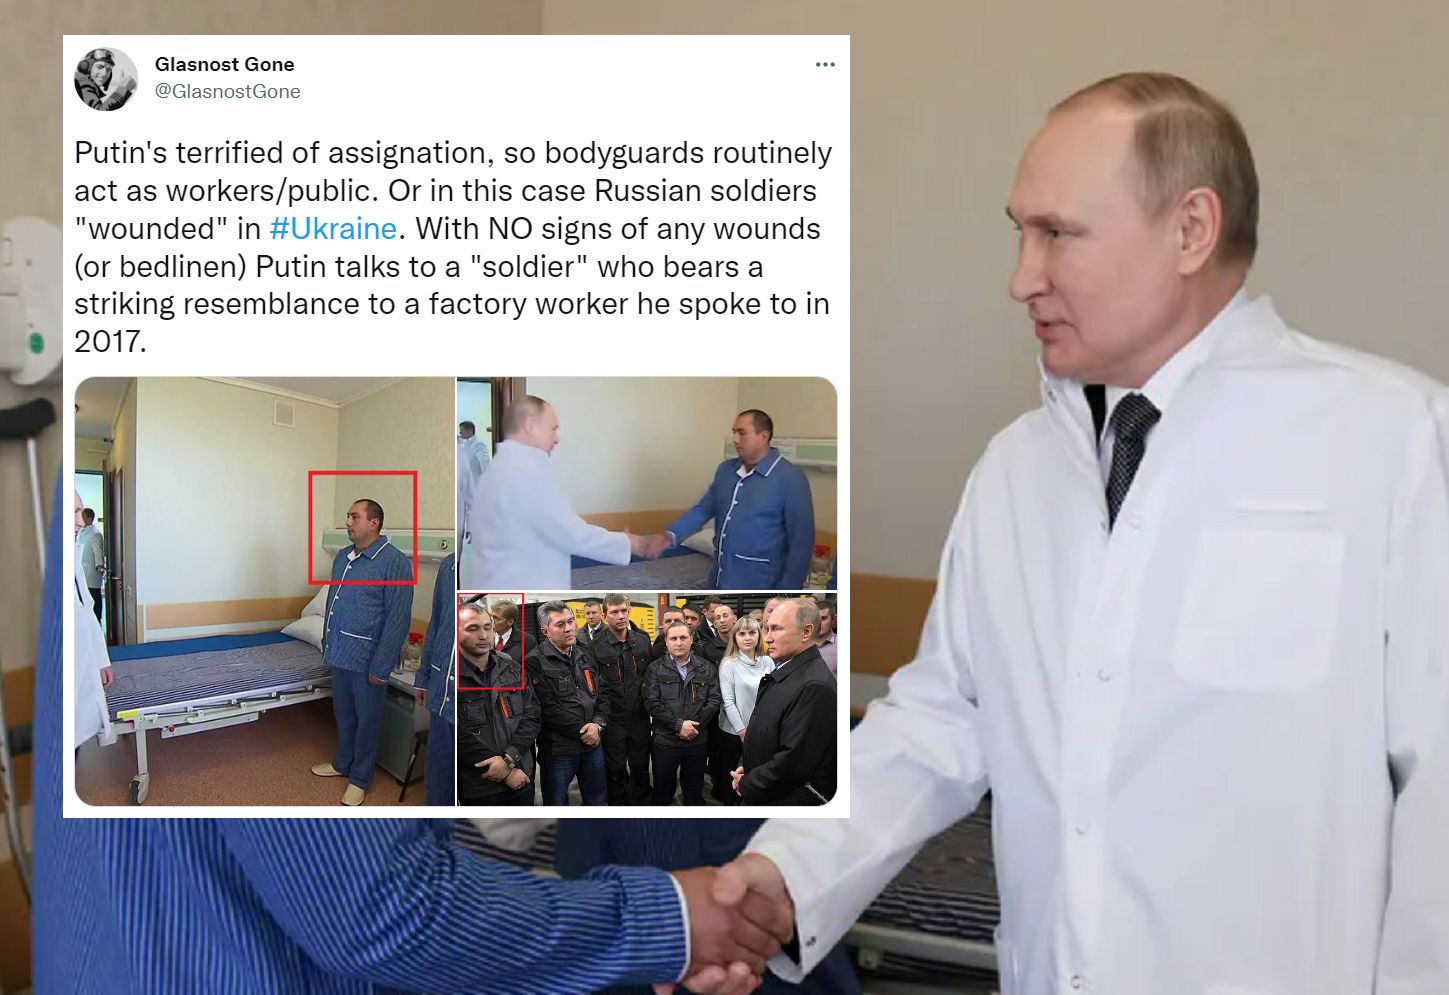 Ustawka z Putinem? "Uderzające podobieństwo" widać na zdjęciach